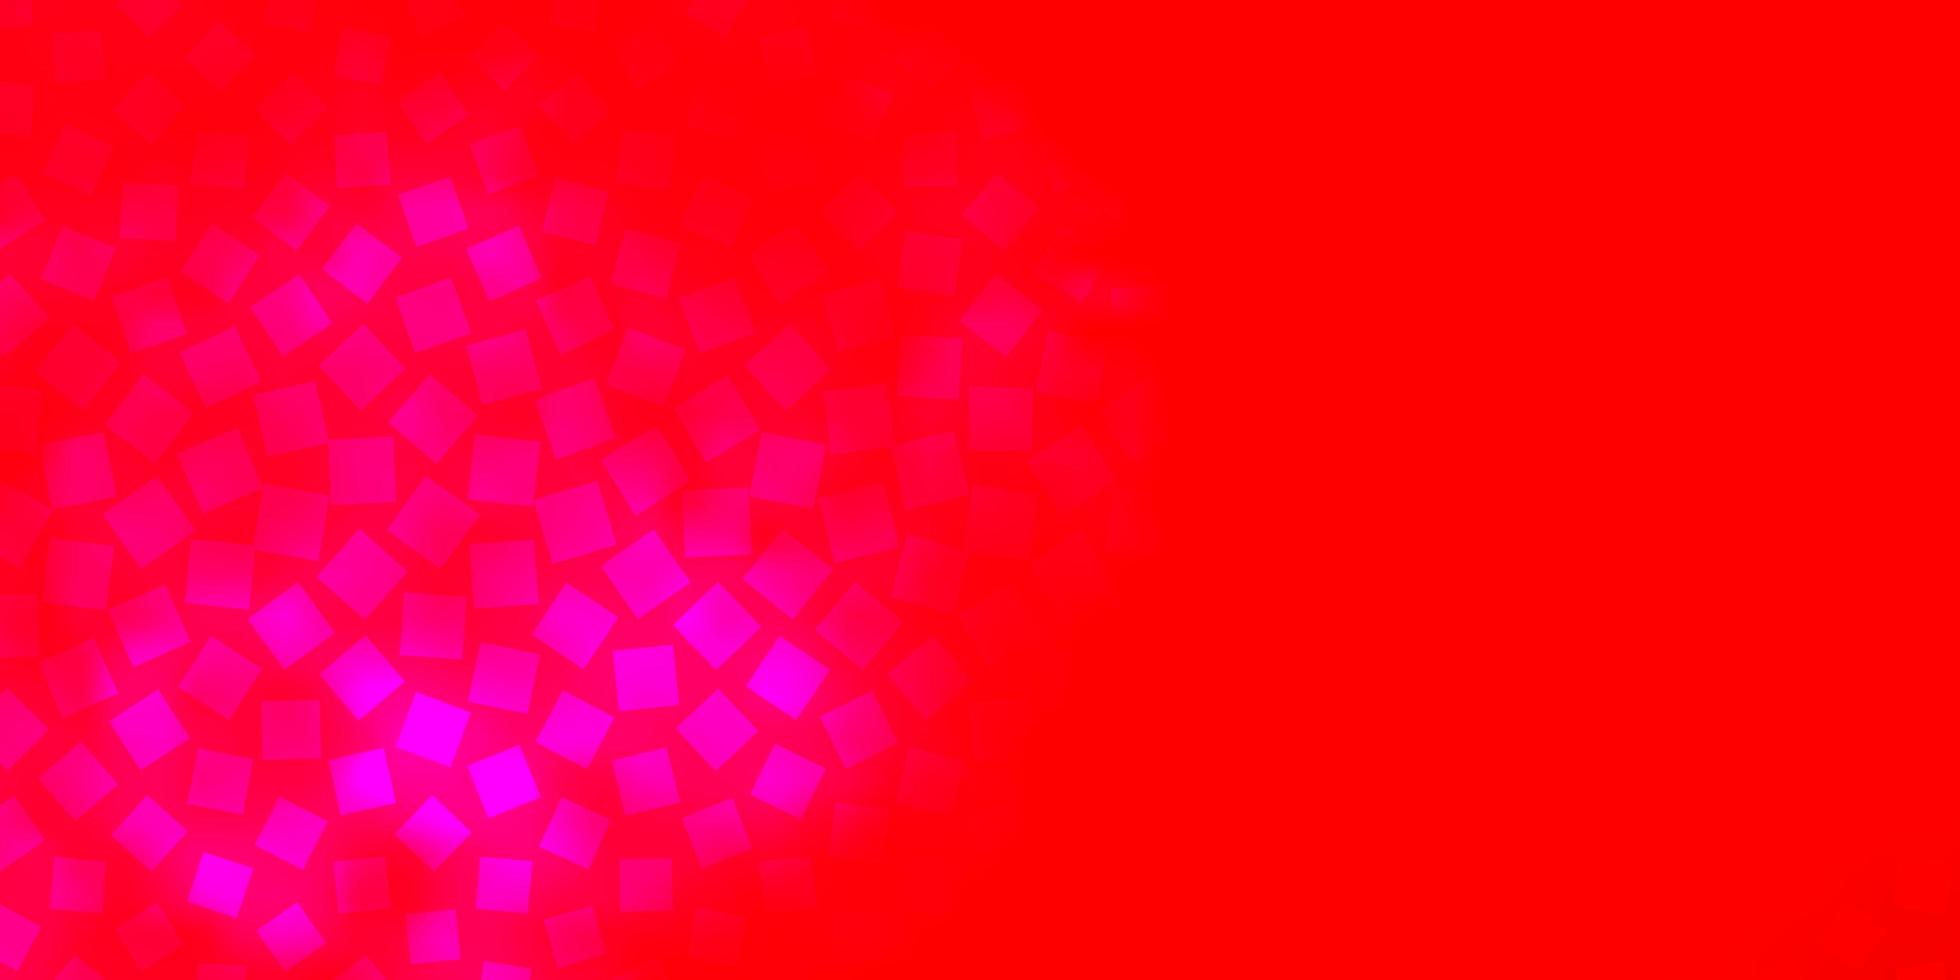 padrão de vetor vermelho rosa claro em retângulos de estilo quadrado com gradiente colorido no padrão de fundo abstrato para anúncios comerciais